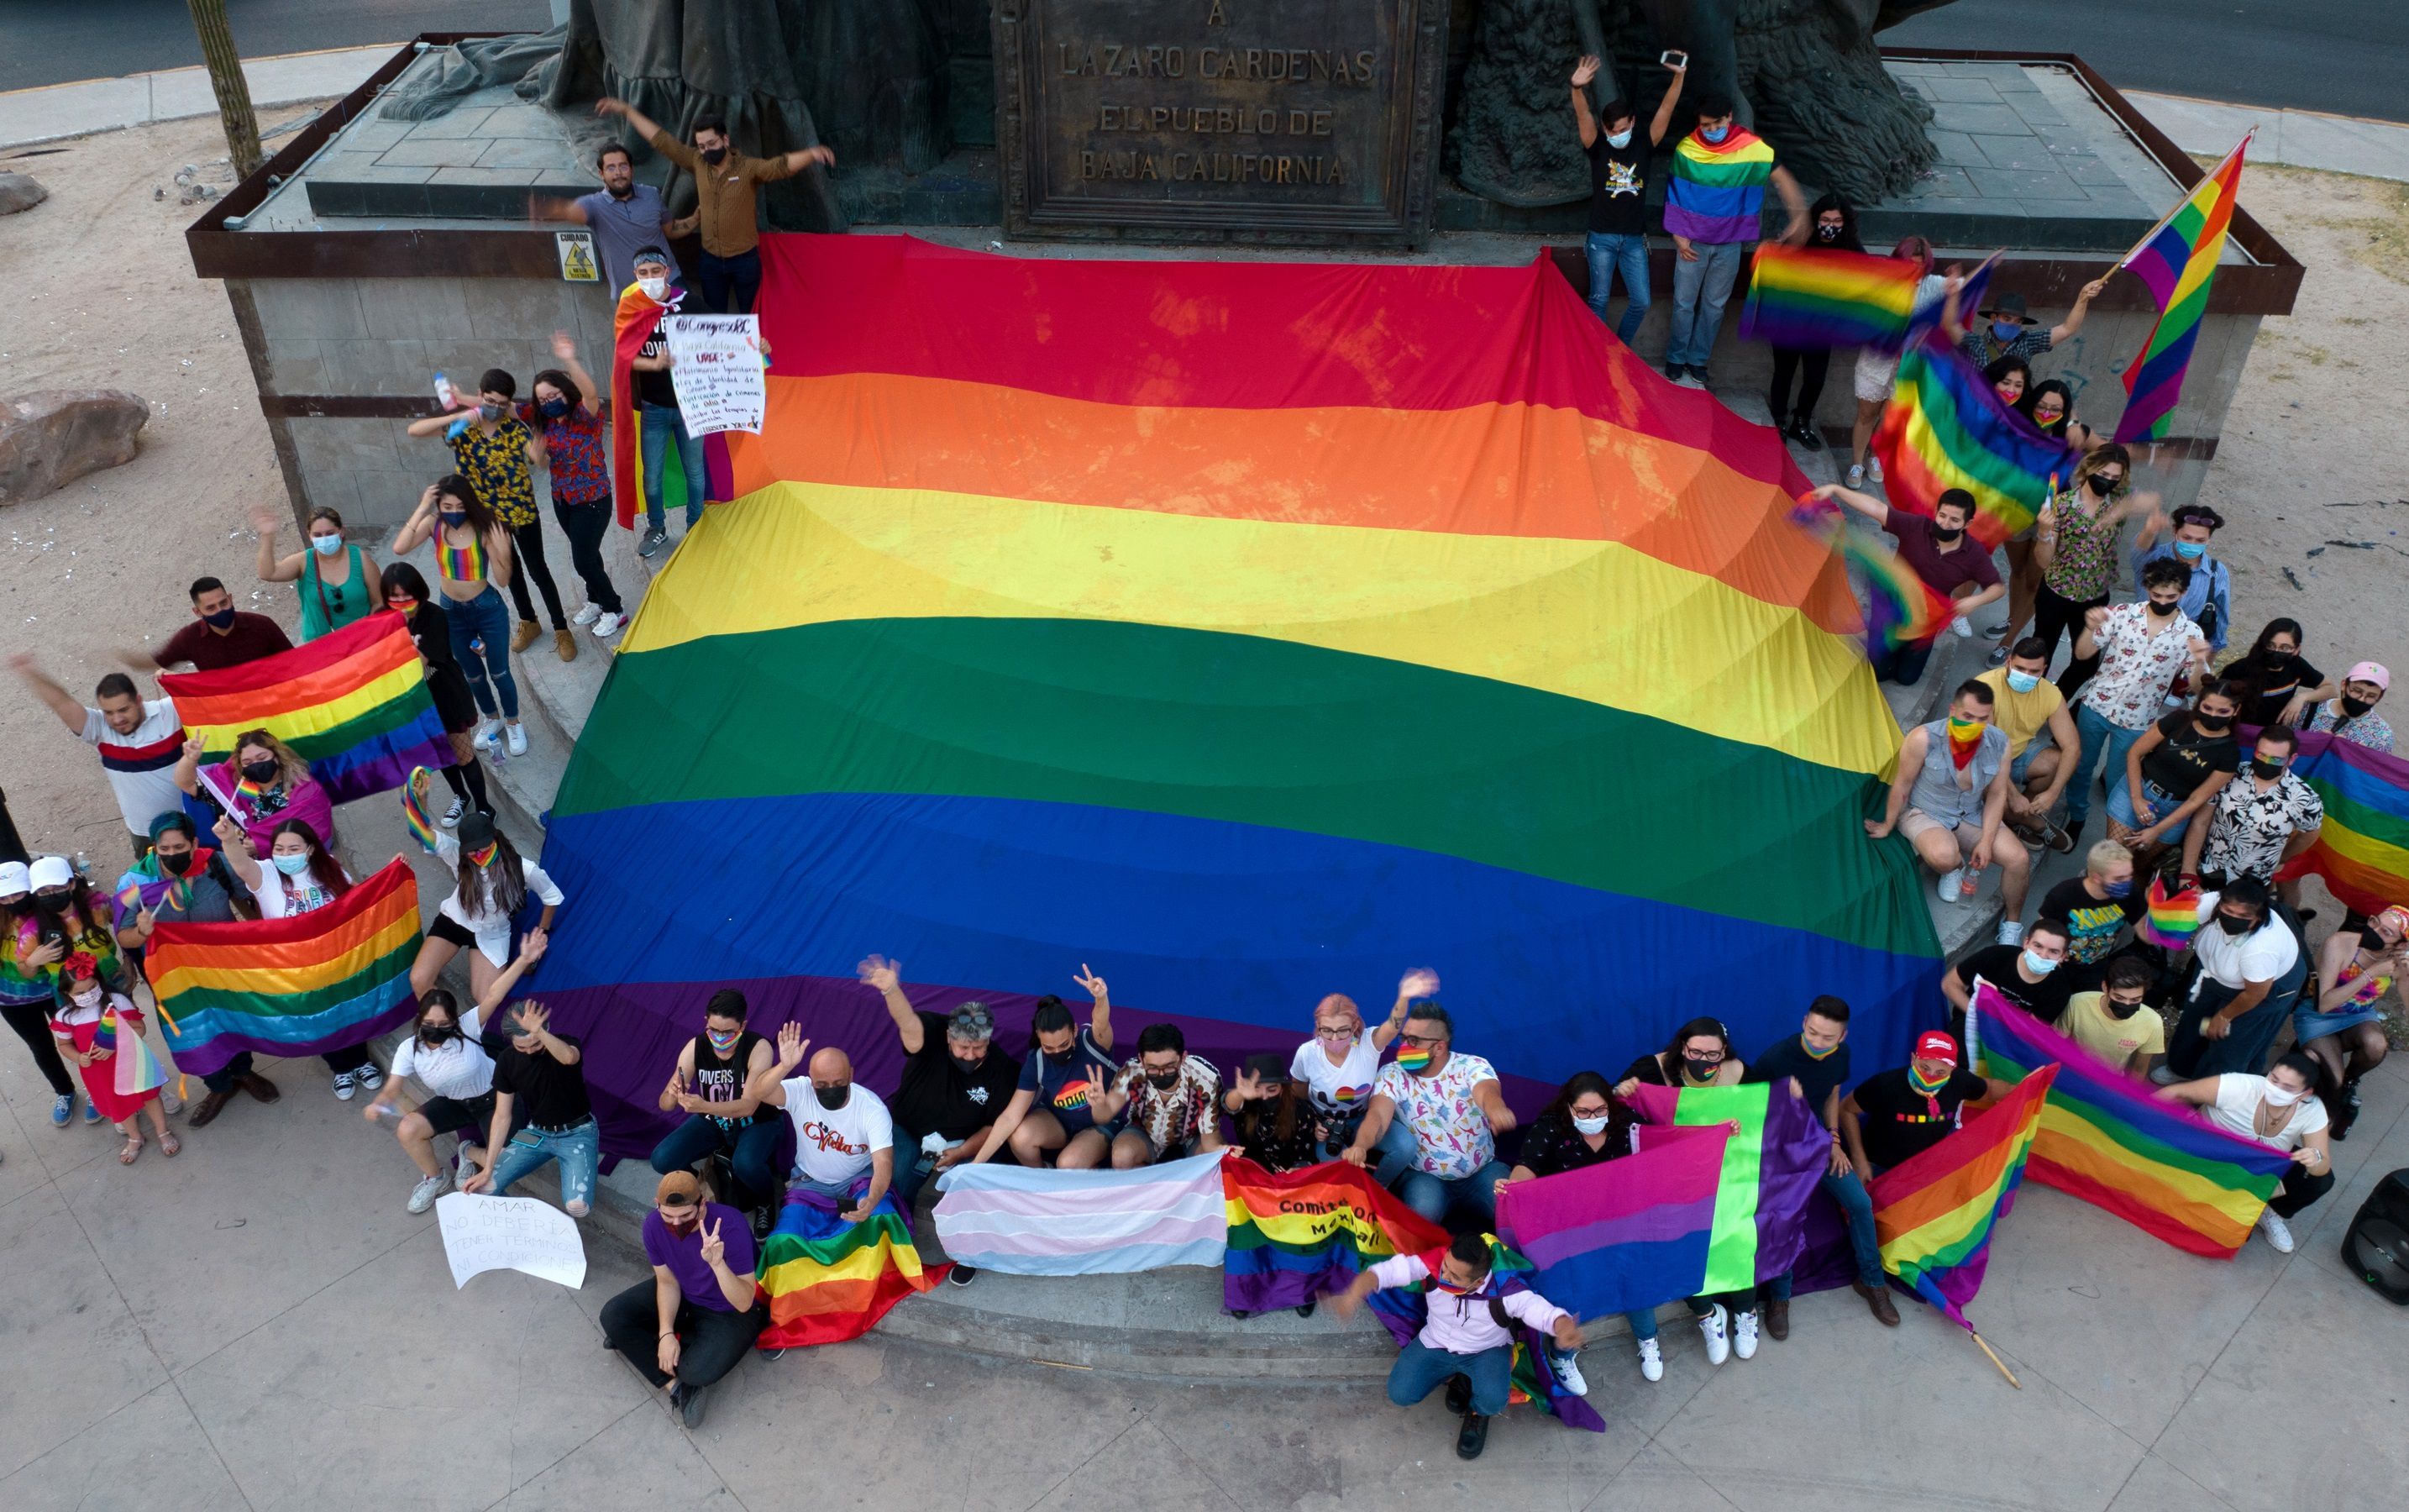 Fotografía cedida este miércoles, por All Out, donde se observa a integrantes de la comunidad LGBT, durante una manifestación en la ciudad de Mexicali, estado de Baja California (México). EFE/All Out/SOLO USO EDITORIAL/ SOLO DISPONIBLE PARA ILUSTRAR LA NOTICIA QUE ACOMPAÑA (CRÉDITO OBLIGATORIO).
